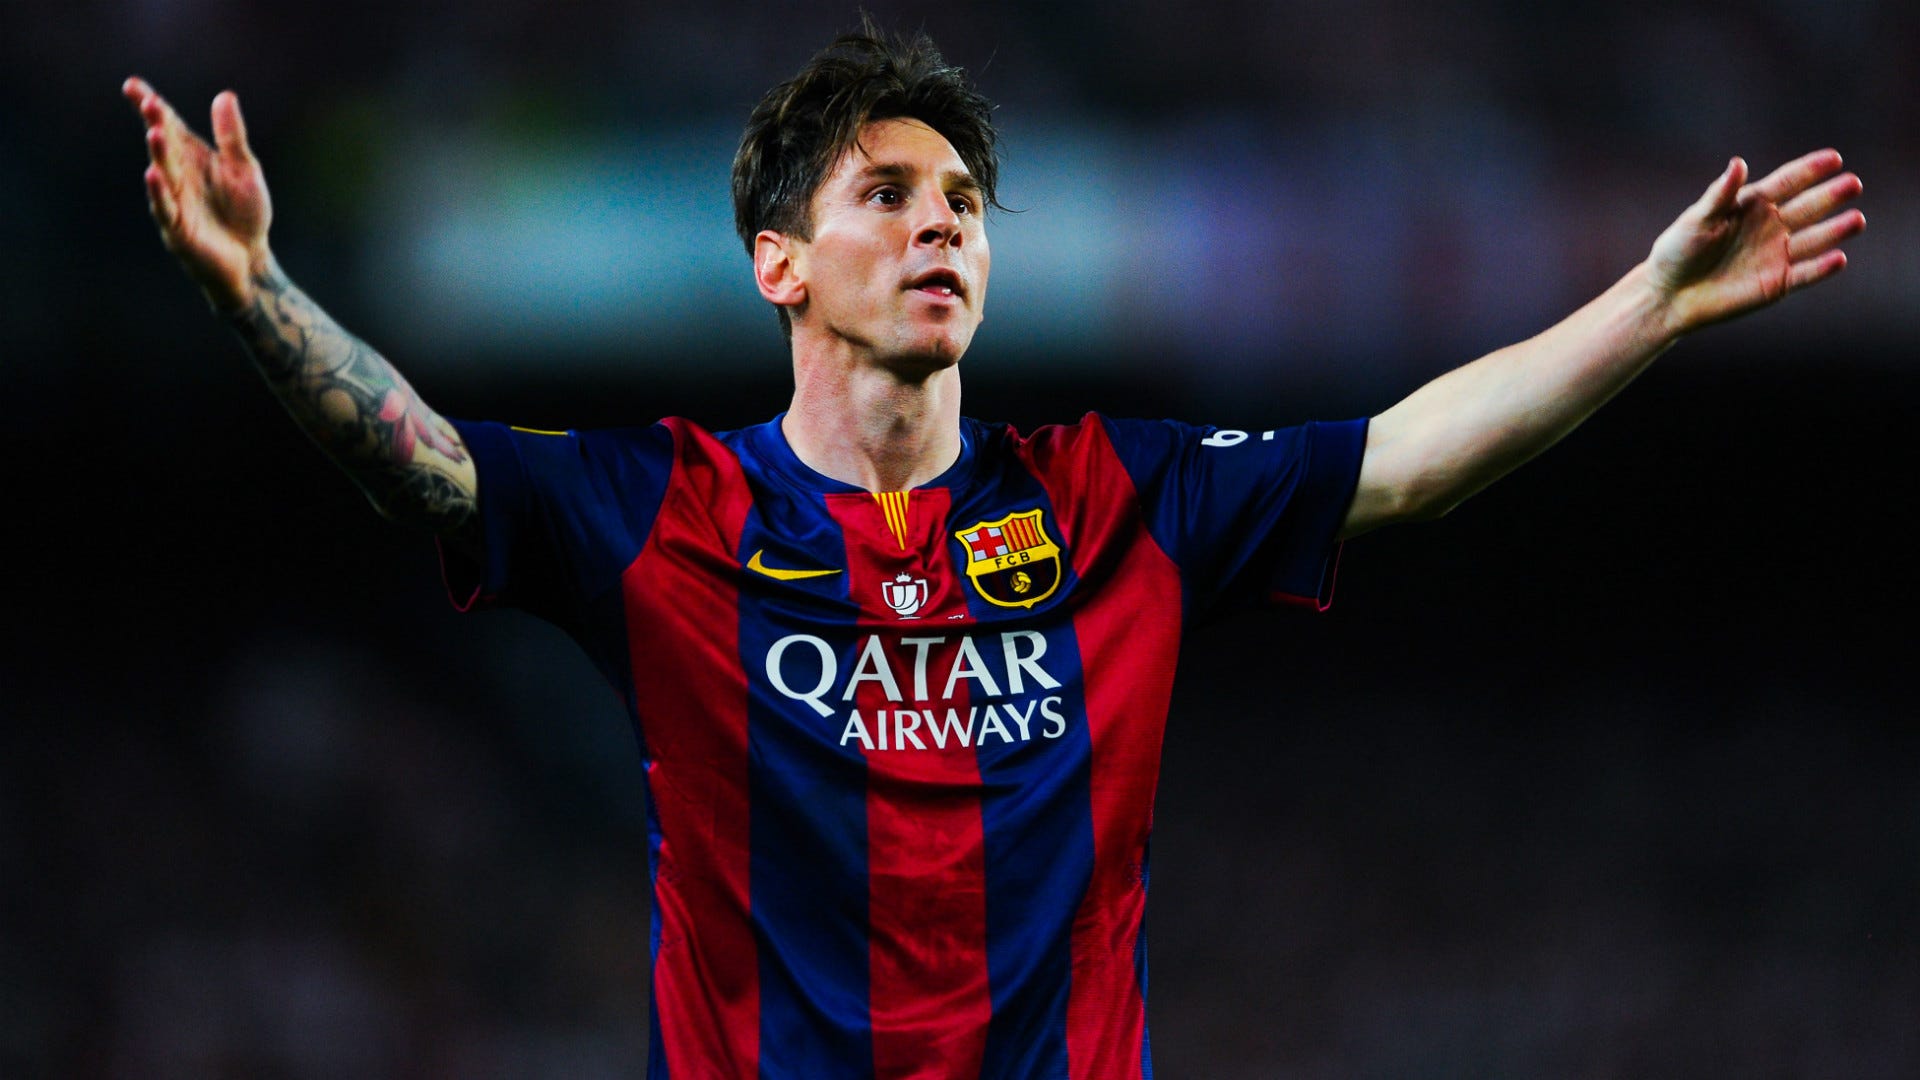 Cuál es el neto de Messi y cuánto dinero gana? Goal.com Espana